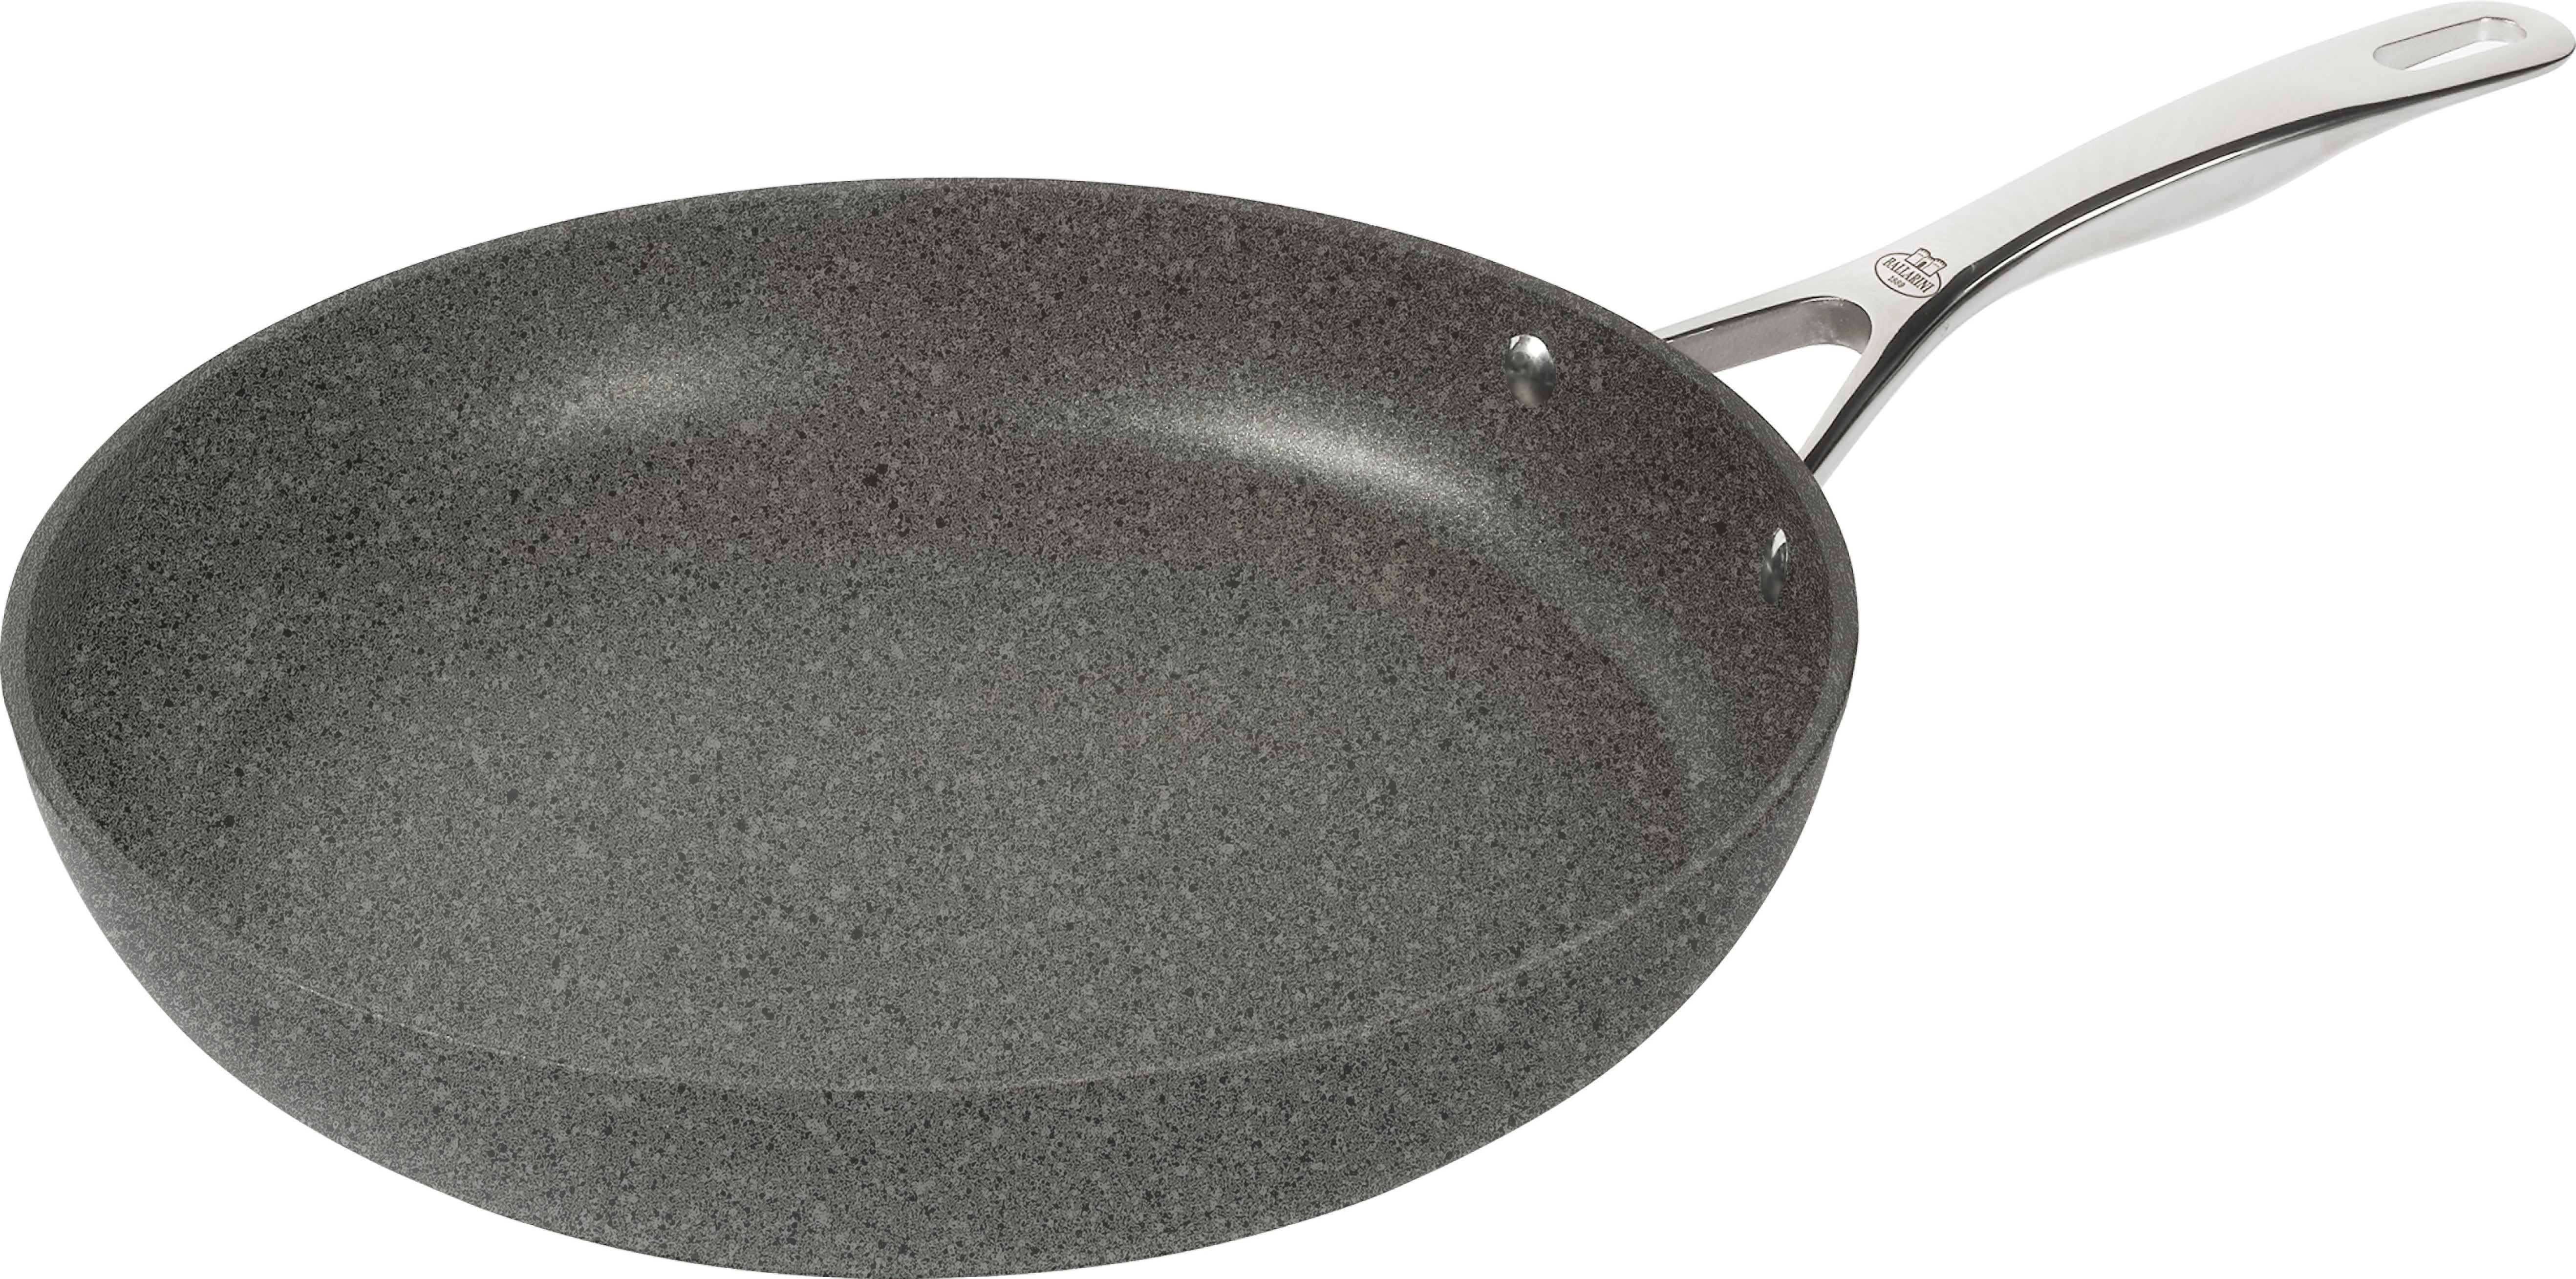 Ballarini Non-stick Aluminum Frying Pan with Handle, Salina line, 26 cm